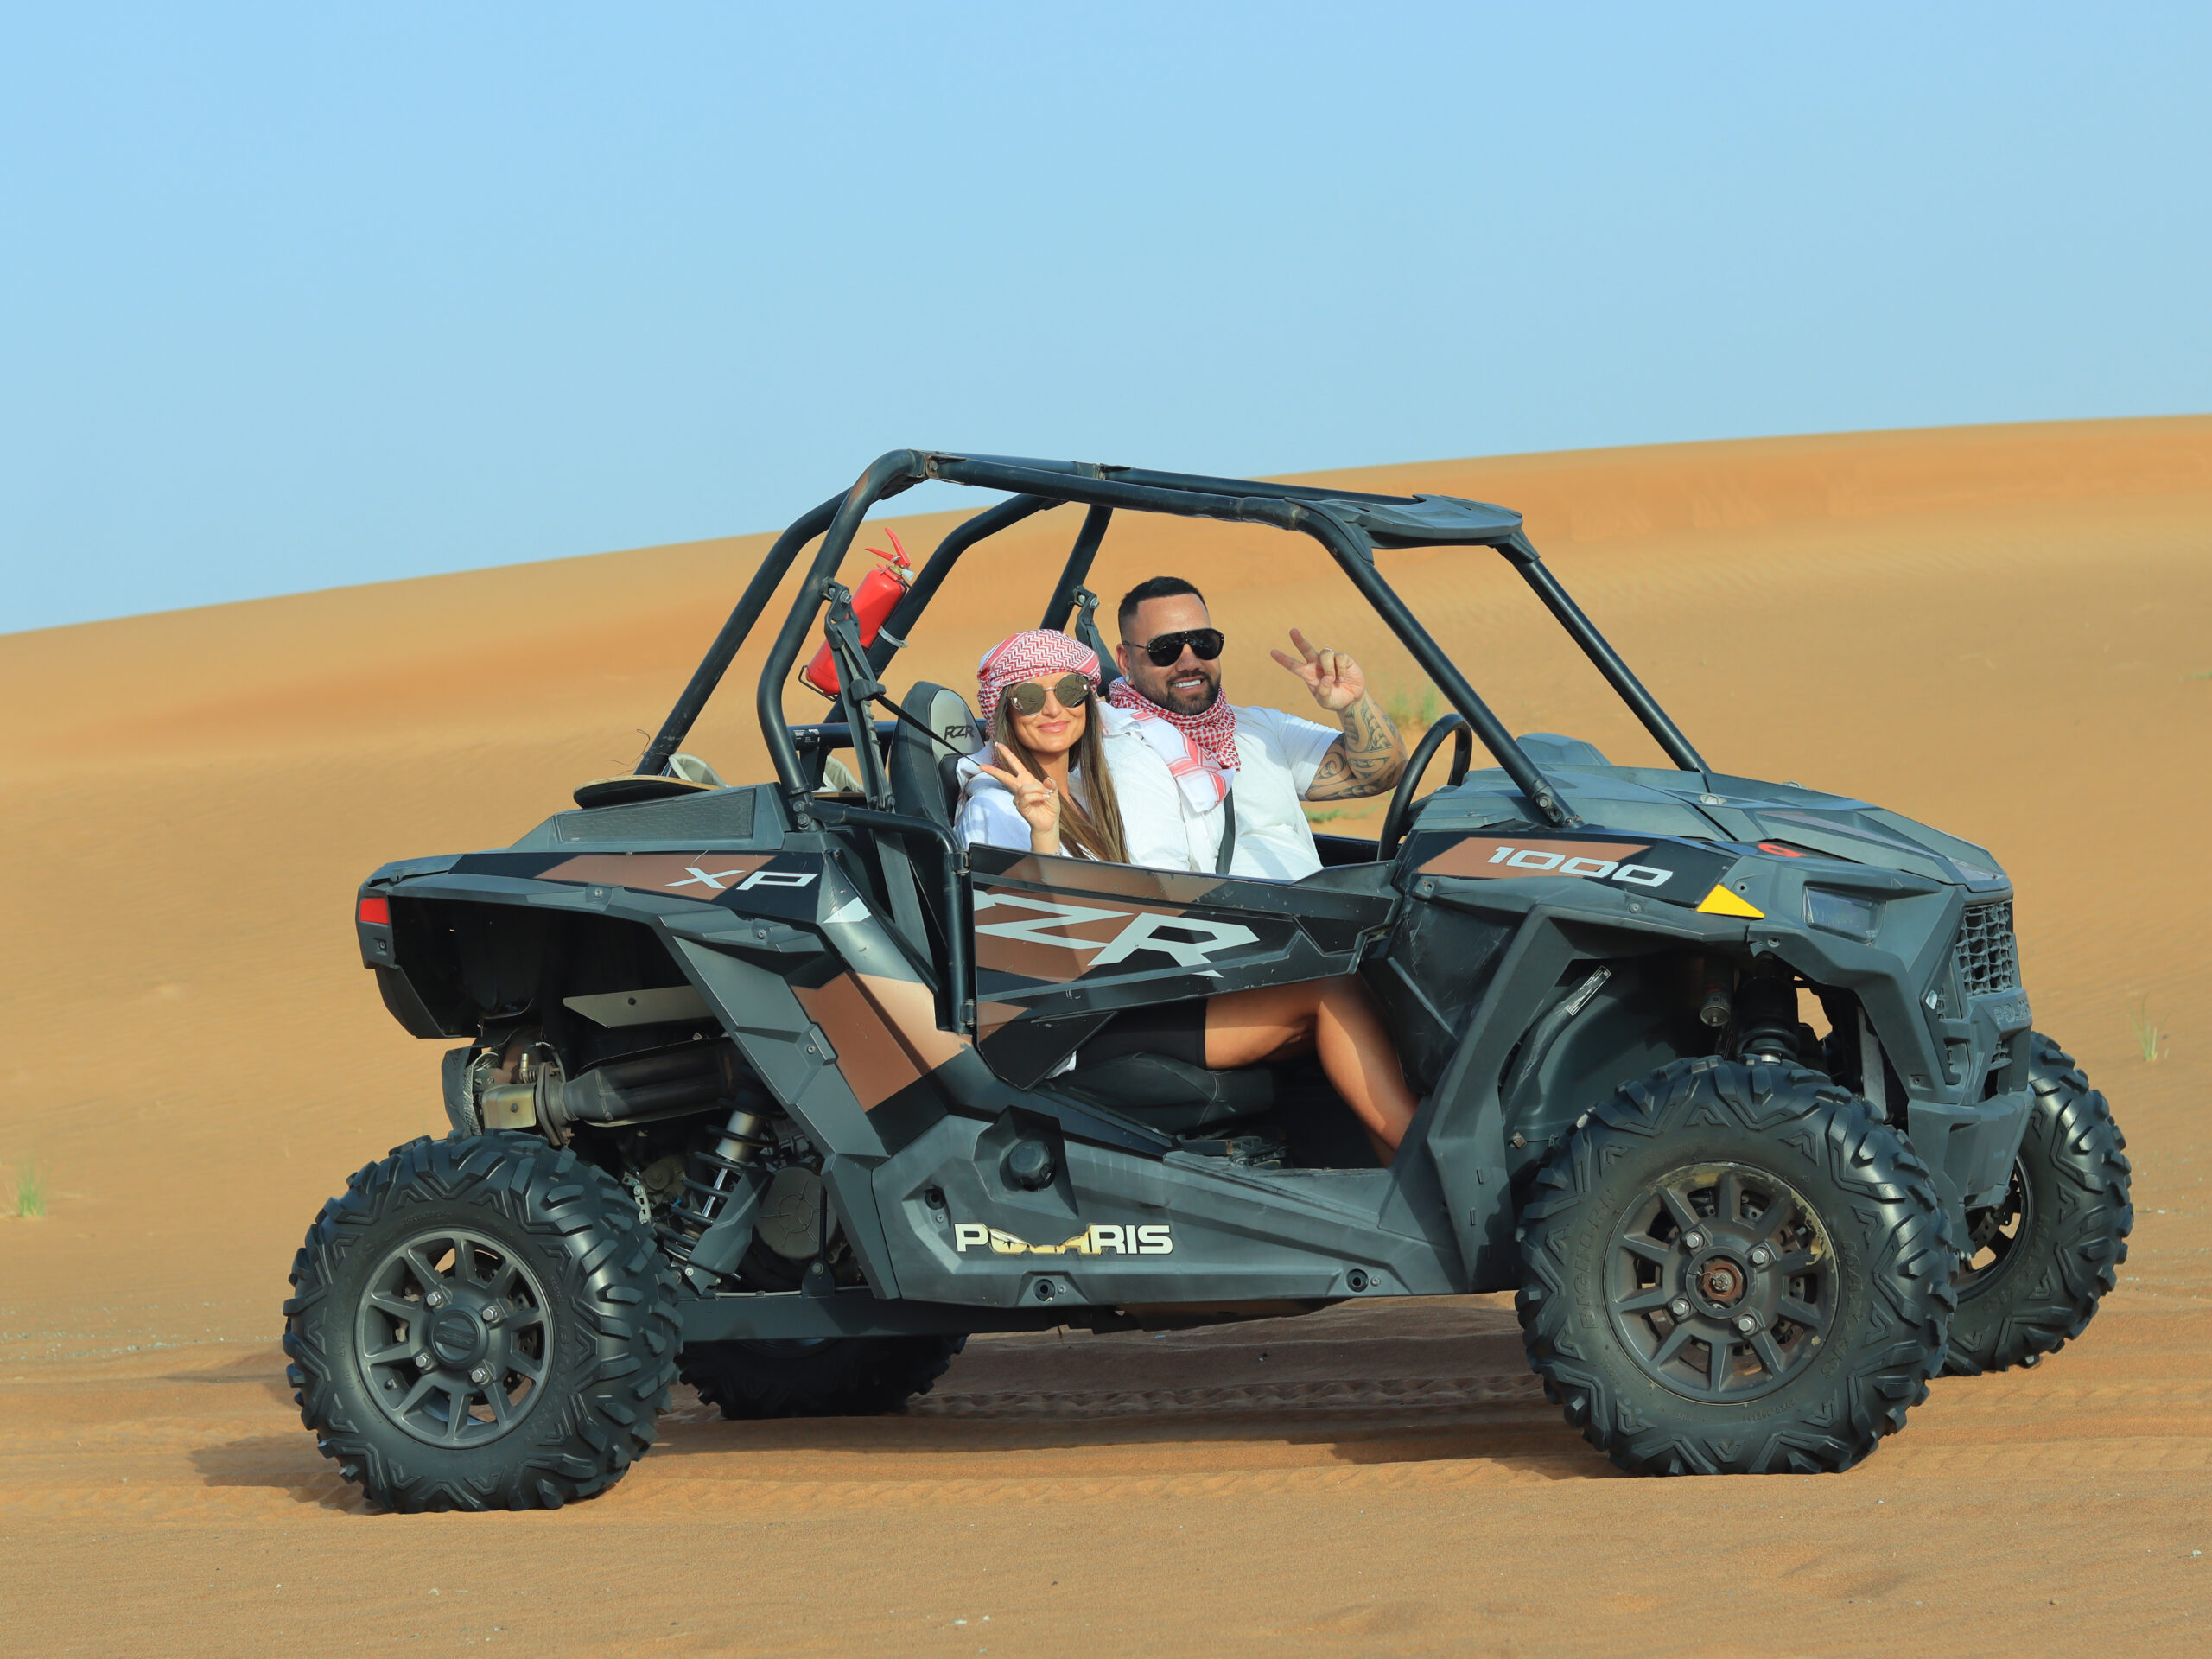 desert safari and quad biking dubai